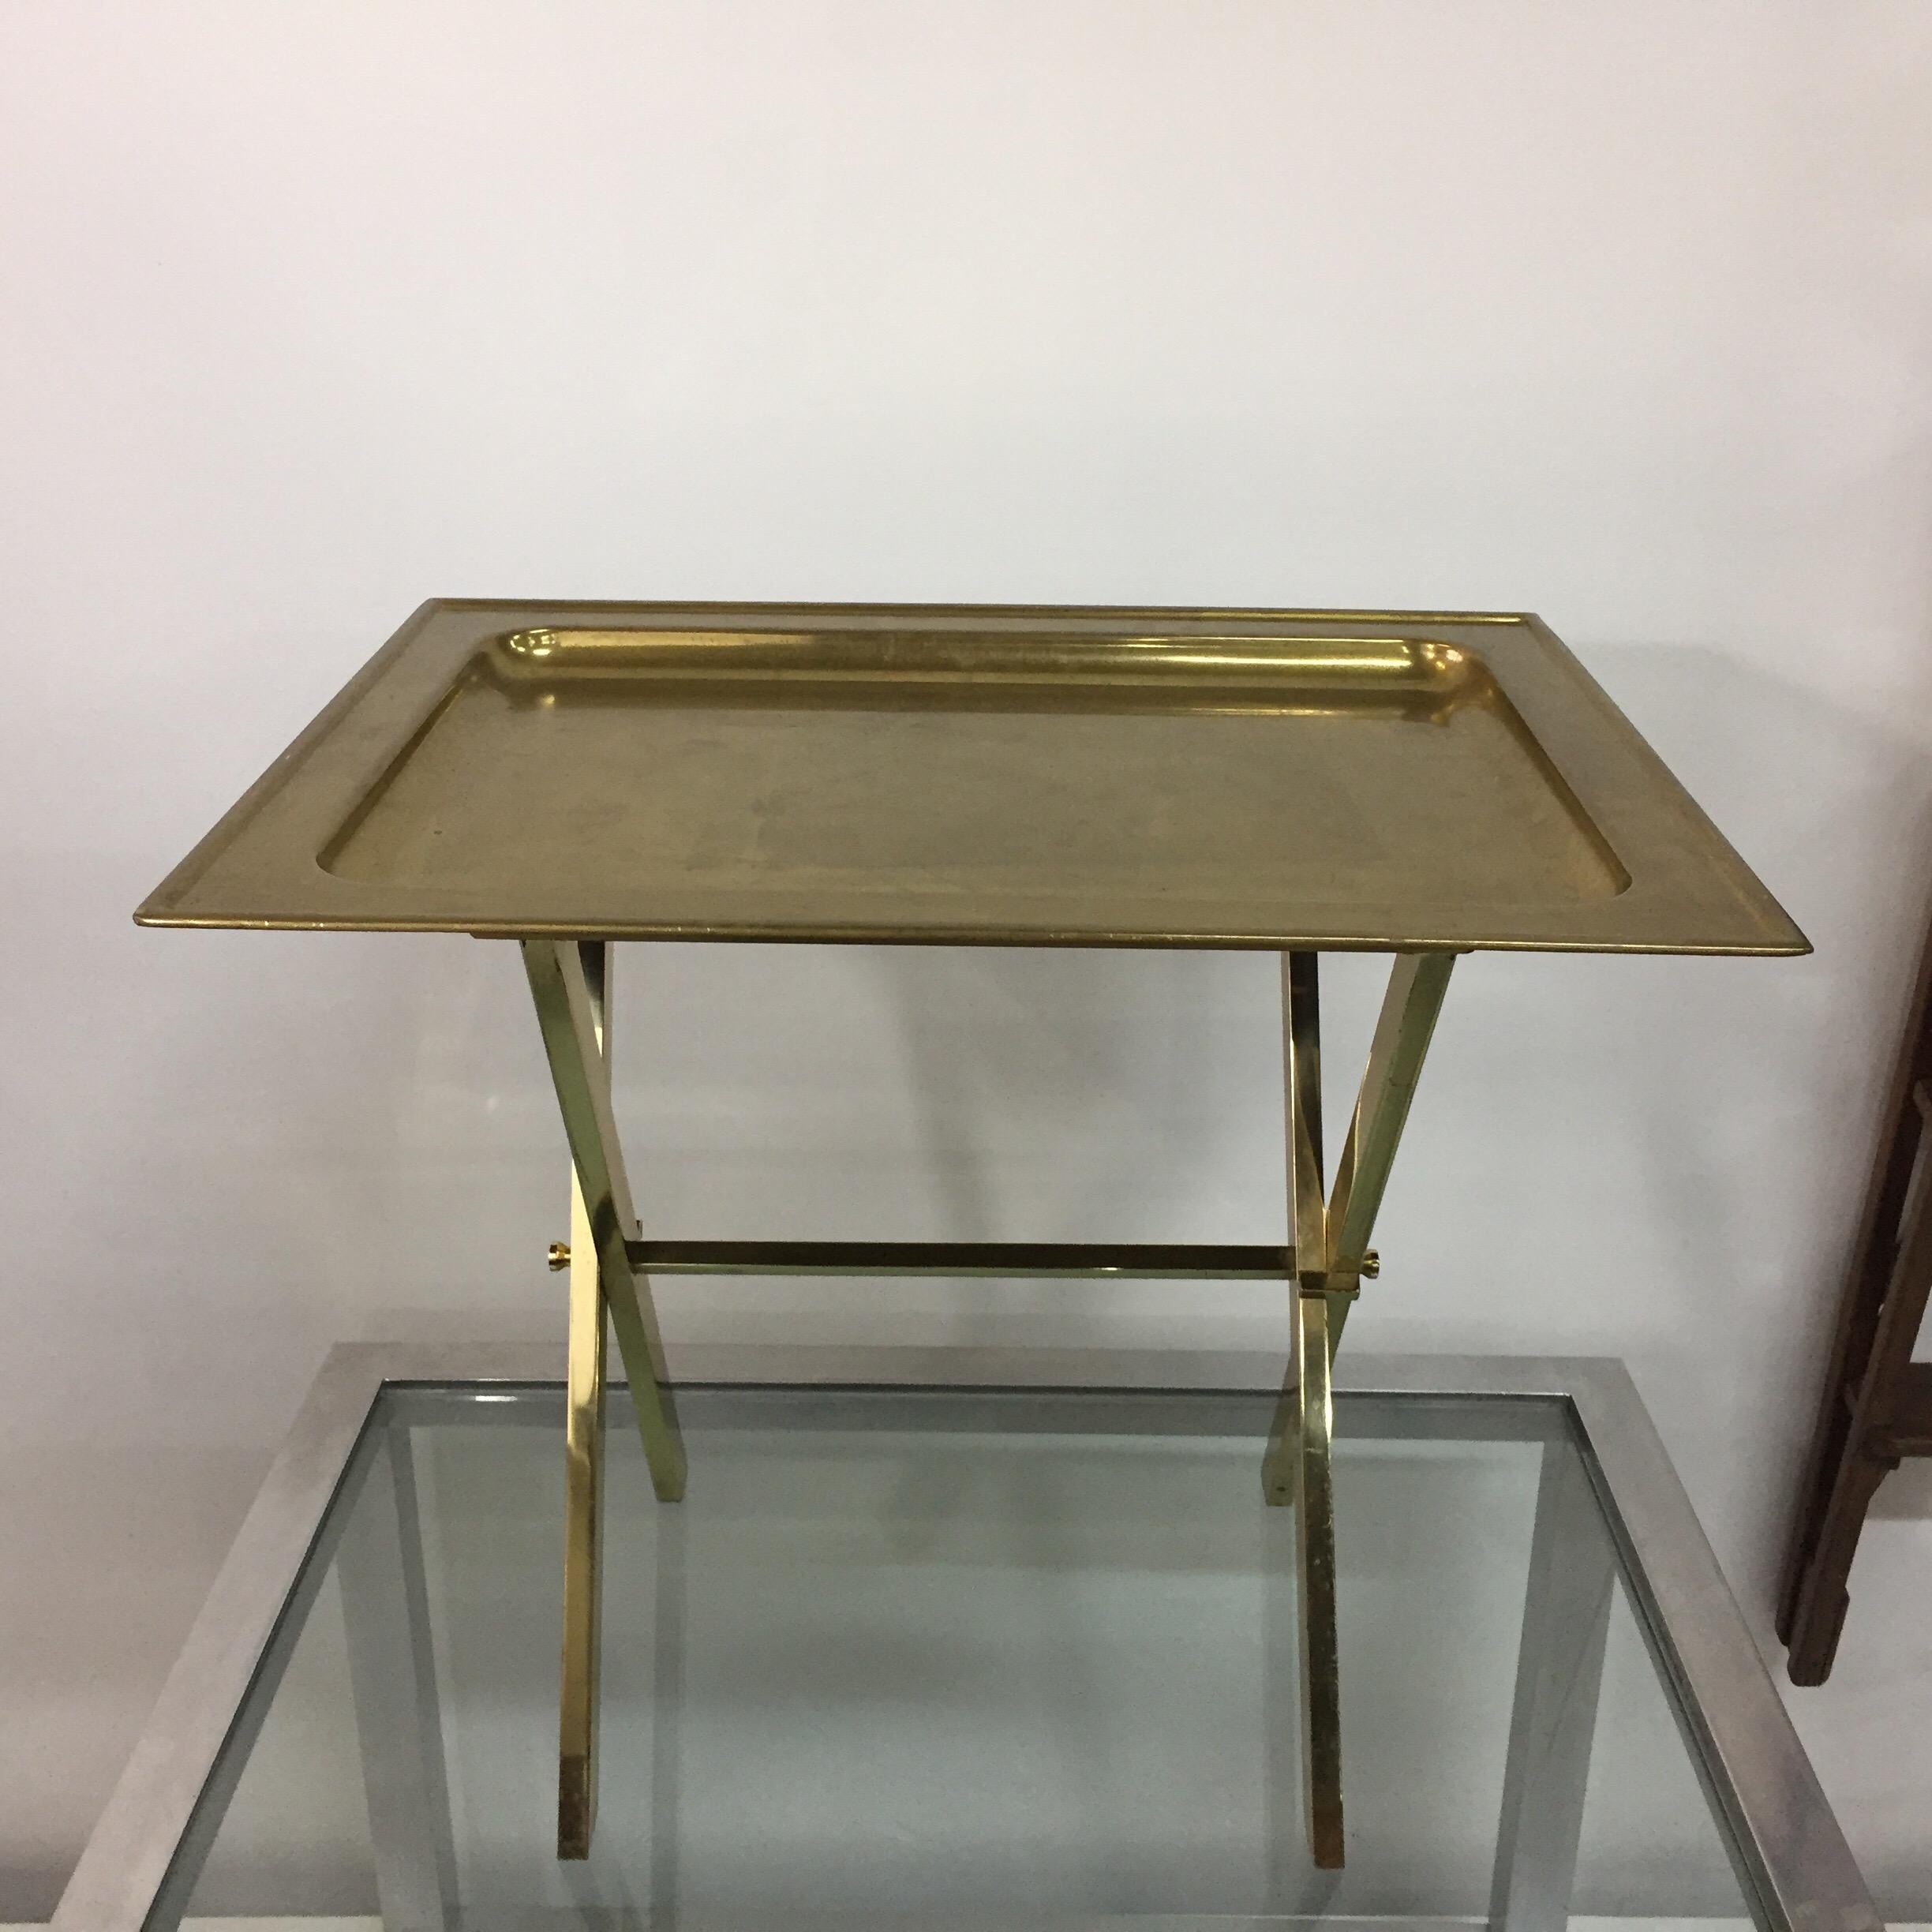 Dieser ganz aus Messing gefertigte Tabletttisch mit klappbarem Fuß im Stil von Jansen aus den 1970er Jahren wurde in Italien gefunden. Großartiger Tisch für Unterhaltungen oder als Beistelltisch, leicht zu verstauen, wenn er nicht gebraucht wird.